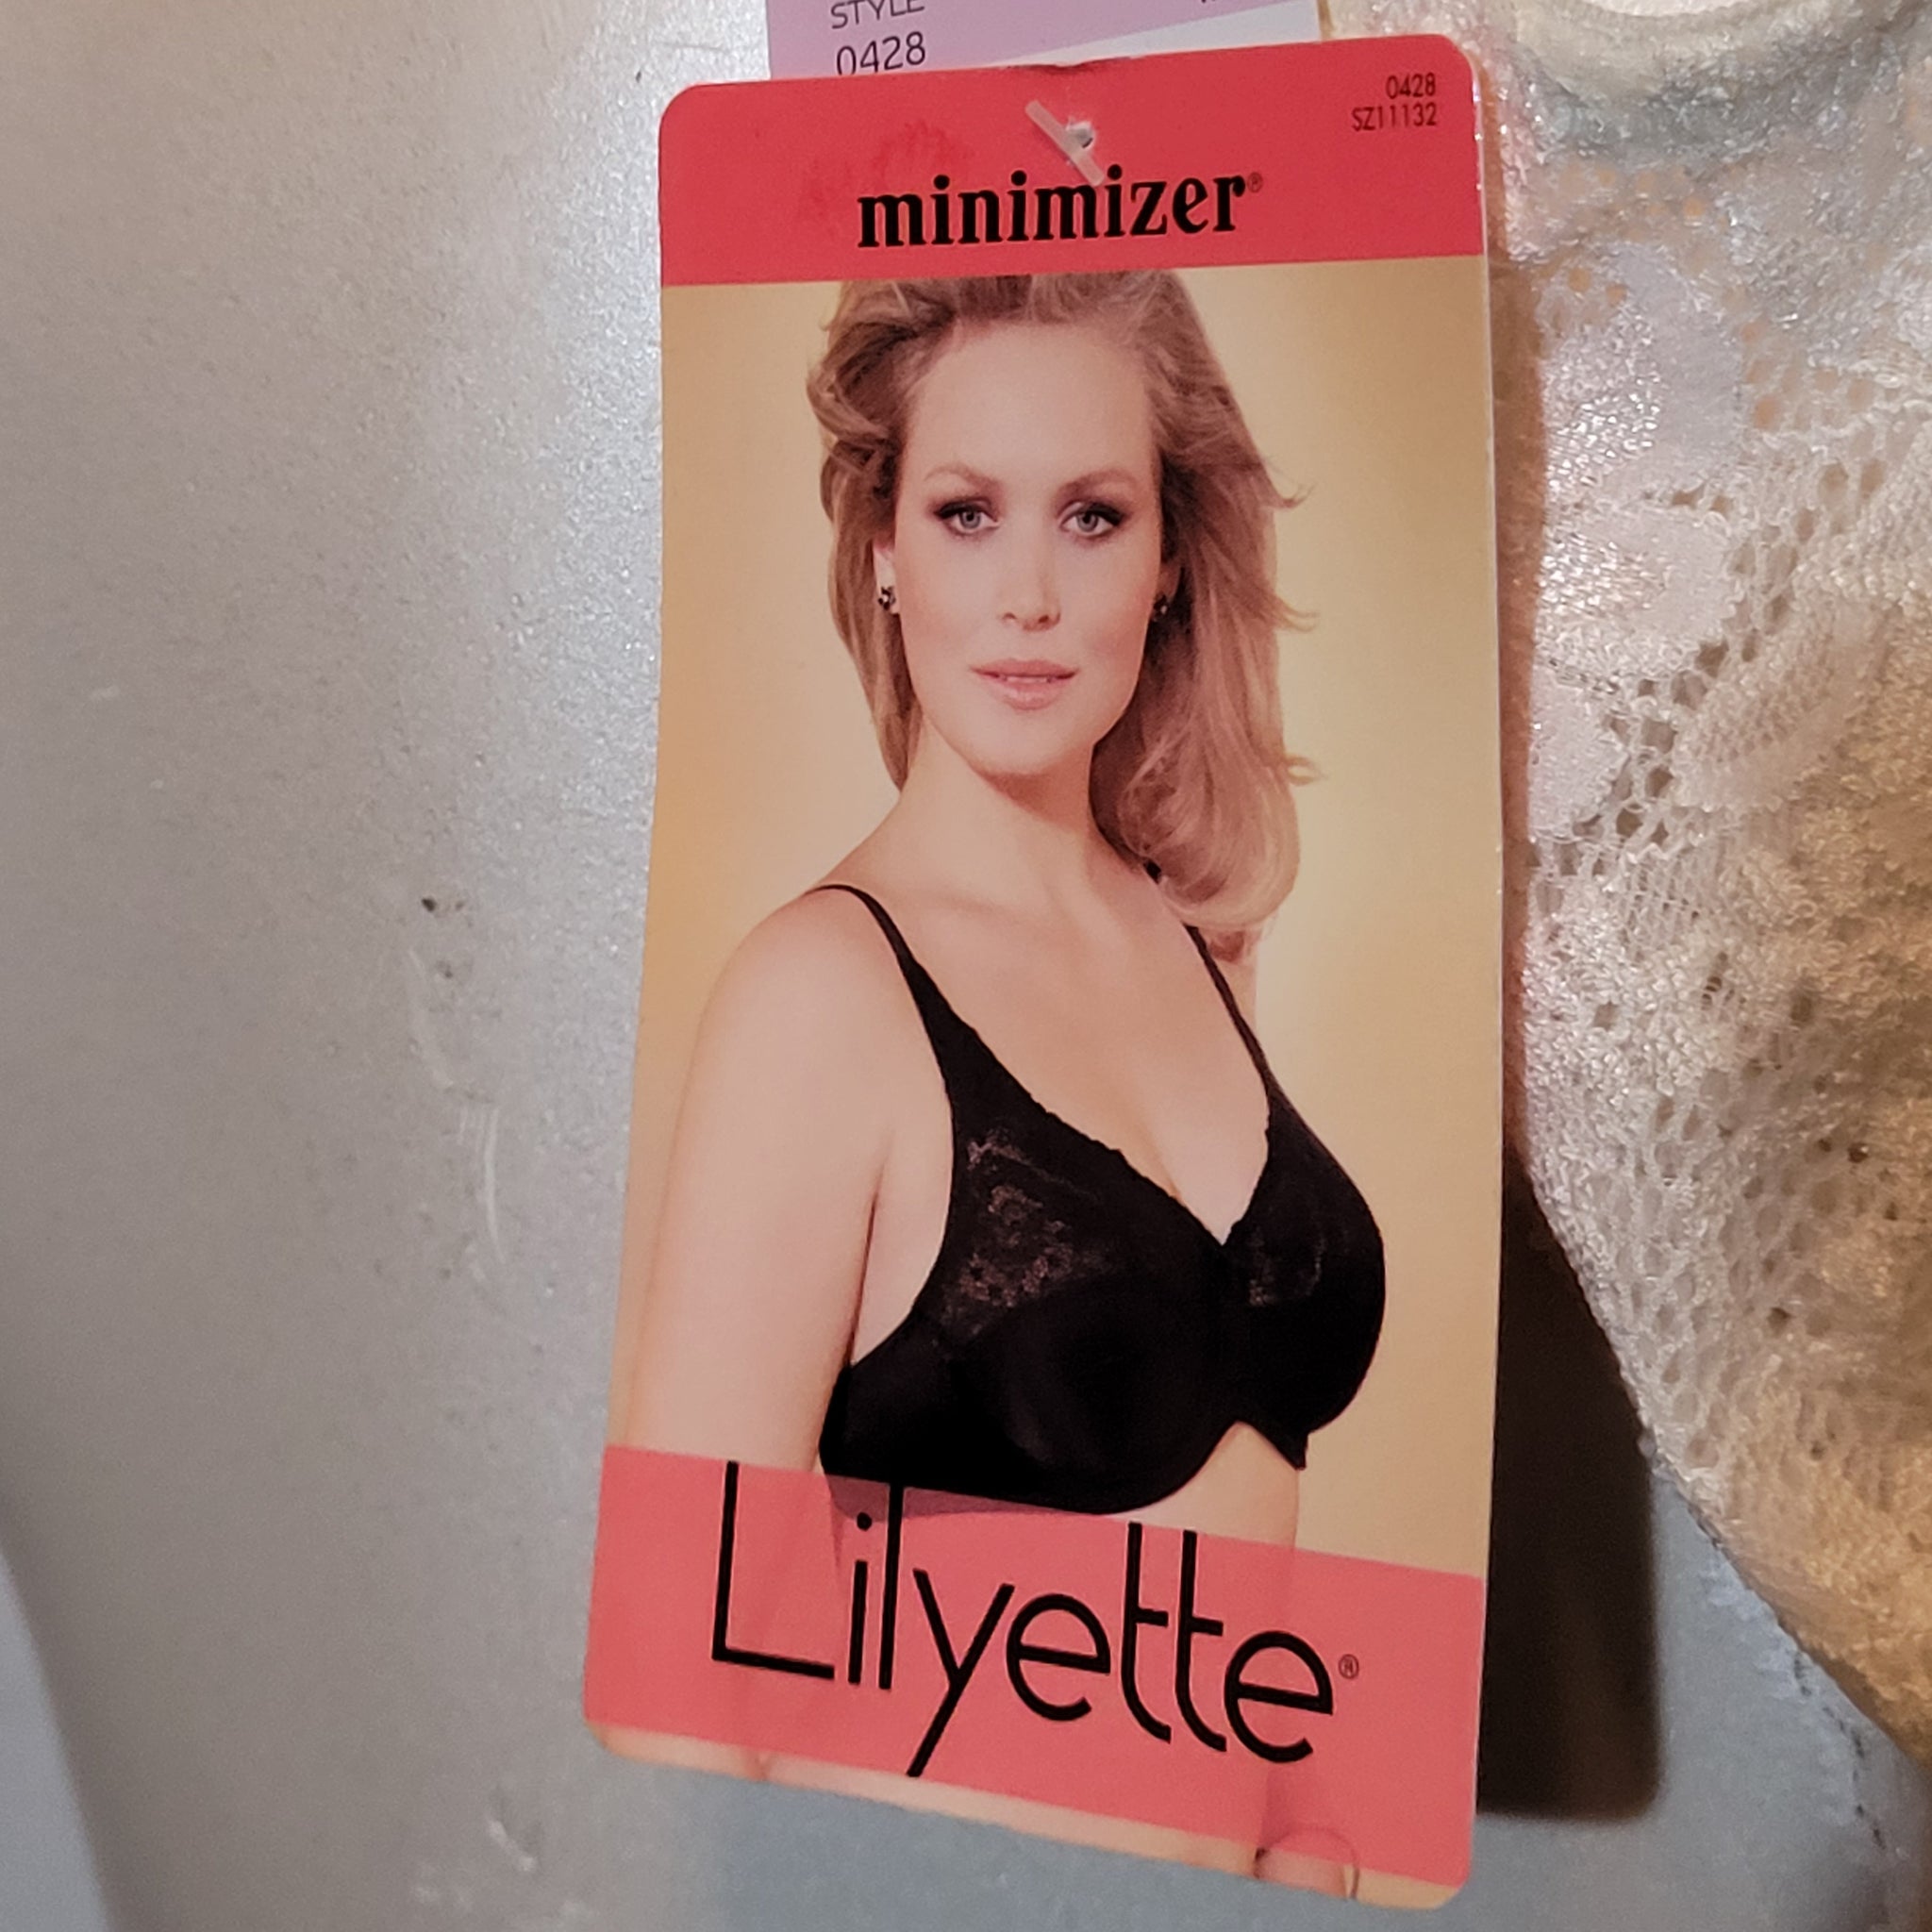 Women's Lilyette 0428 Comfort Lace Minimizer Bra (White 36D